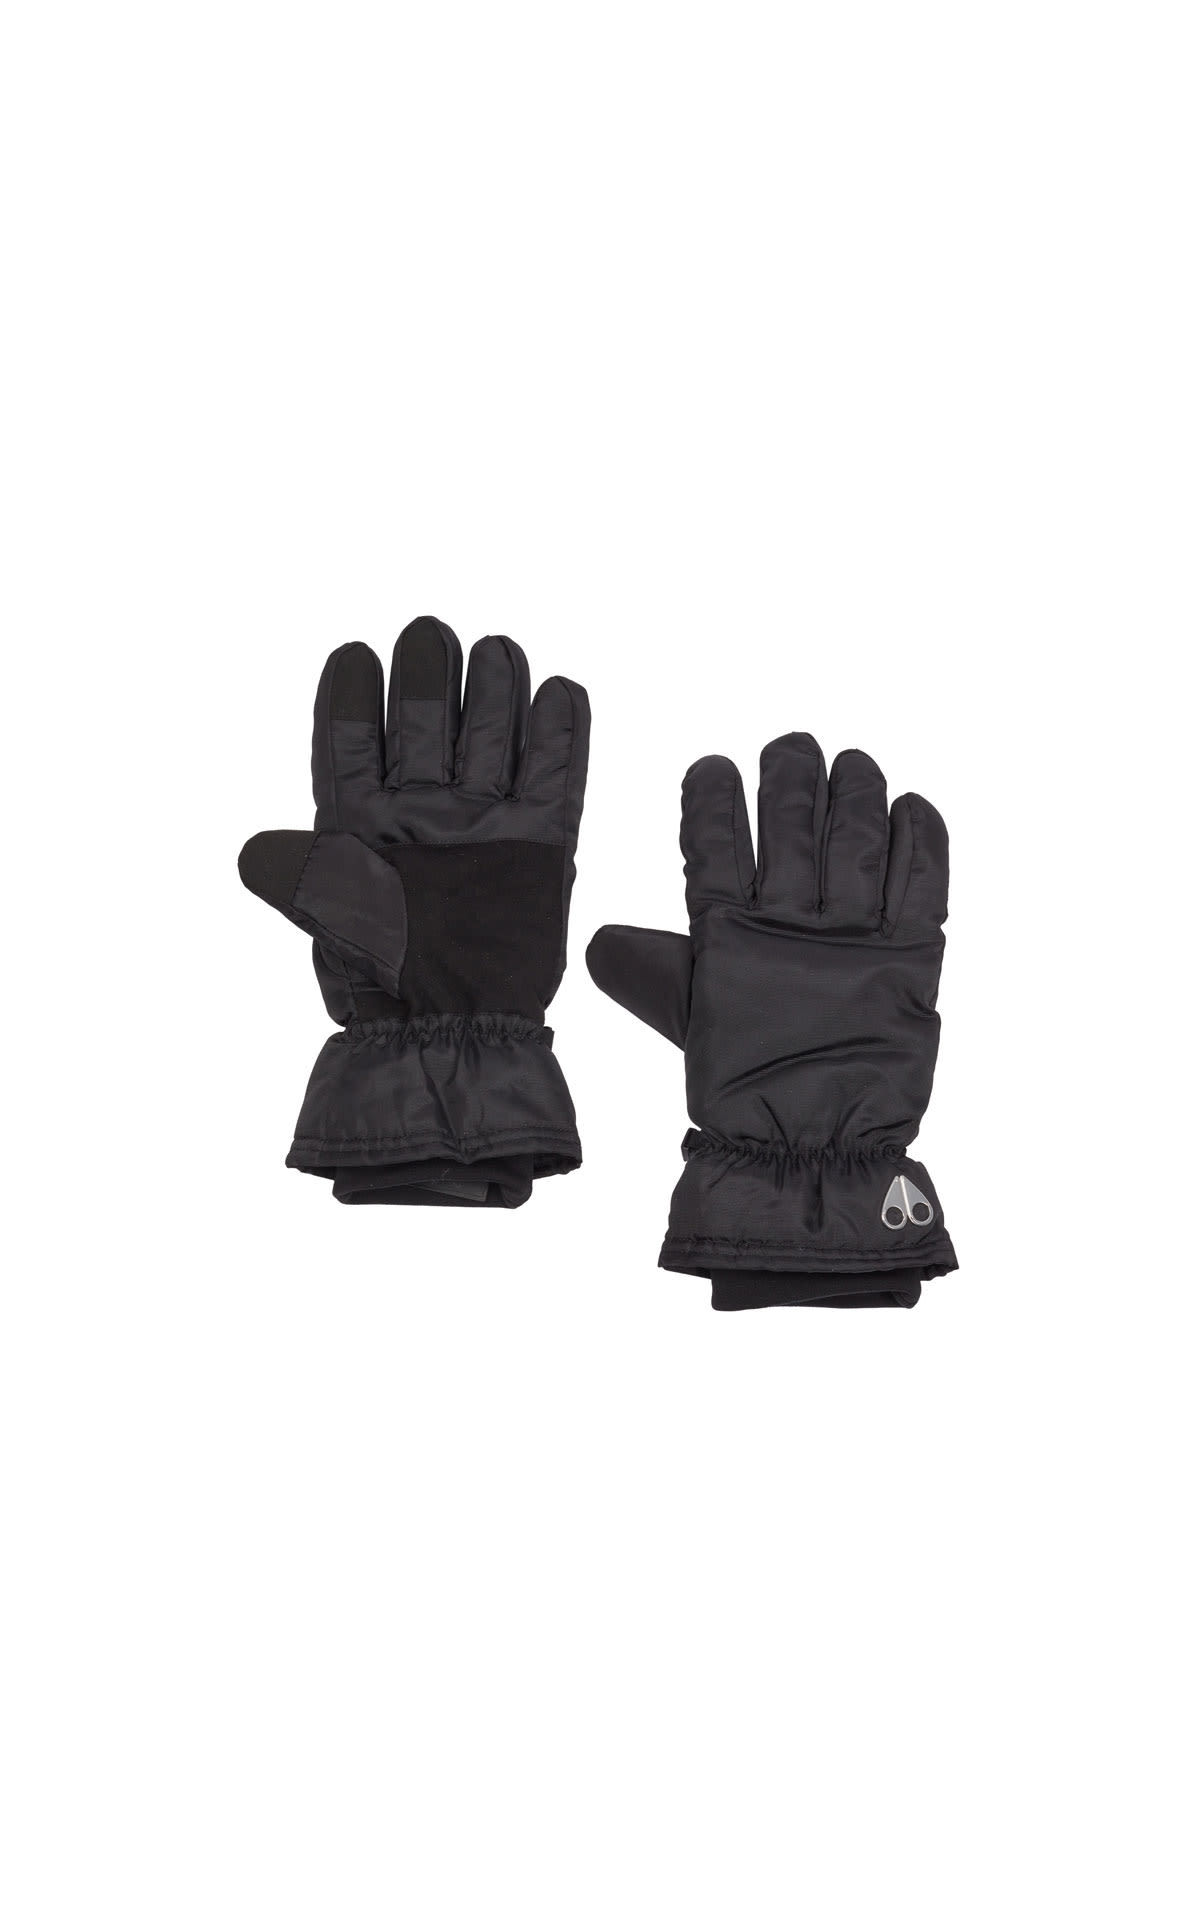 Moose Knuckles Ski gloves from Bicester Village